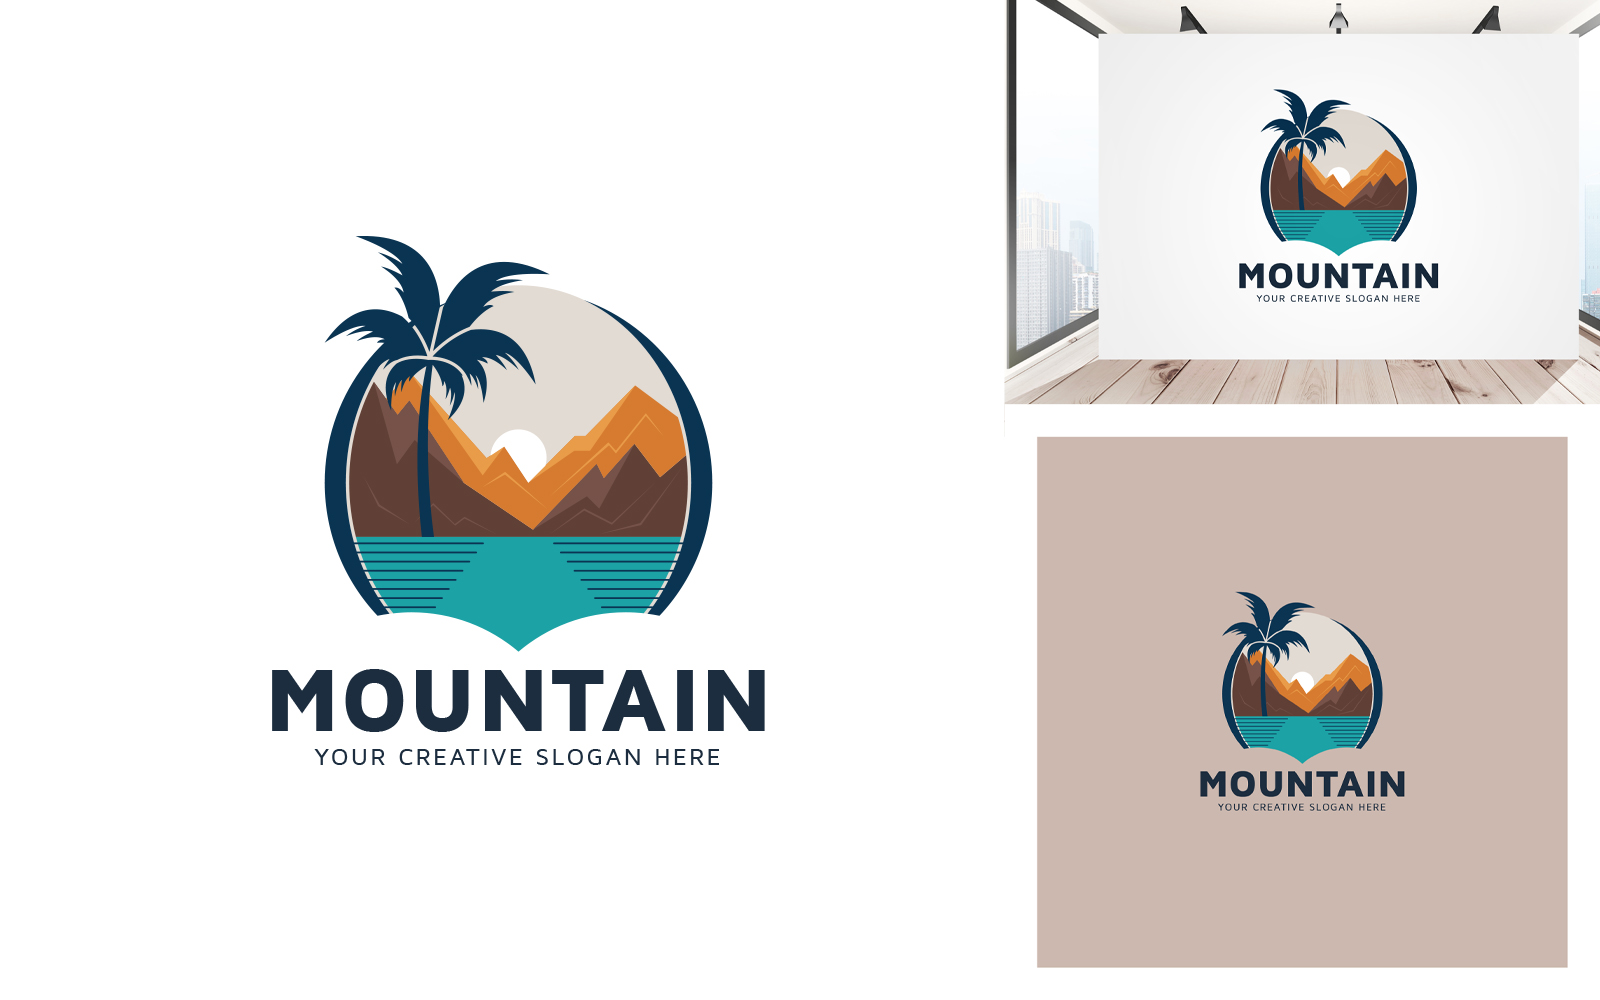 Mountain Outdoor Creative Logo Design Template